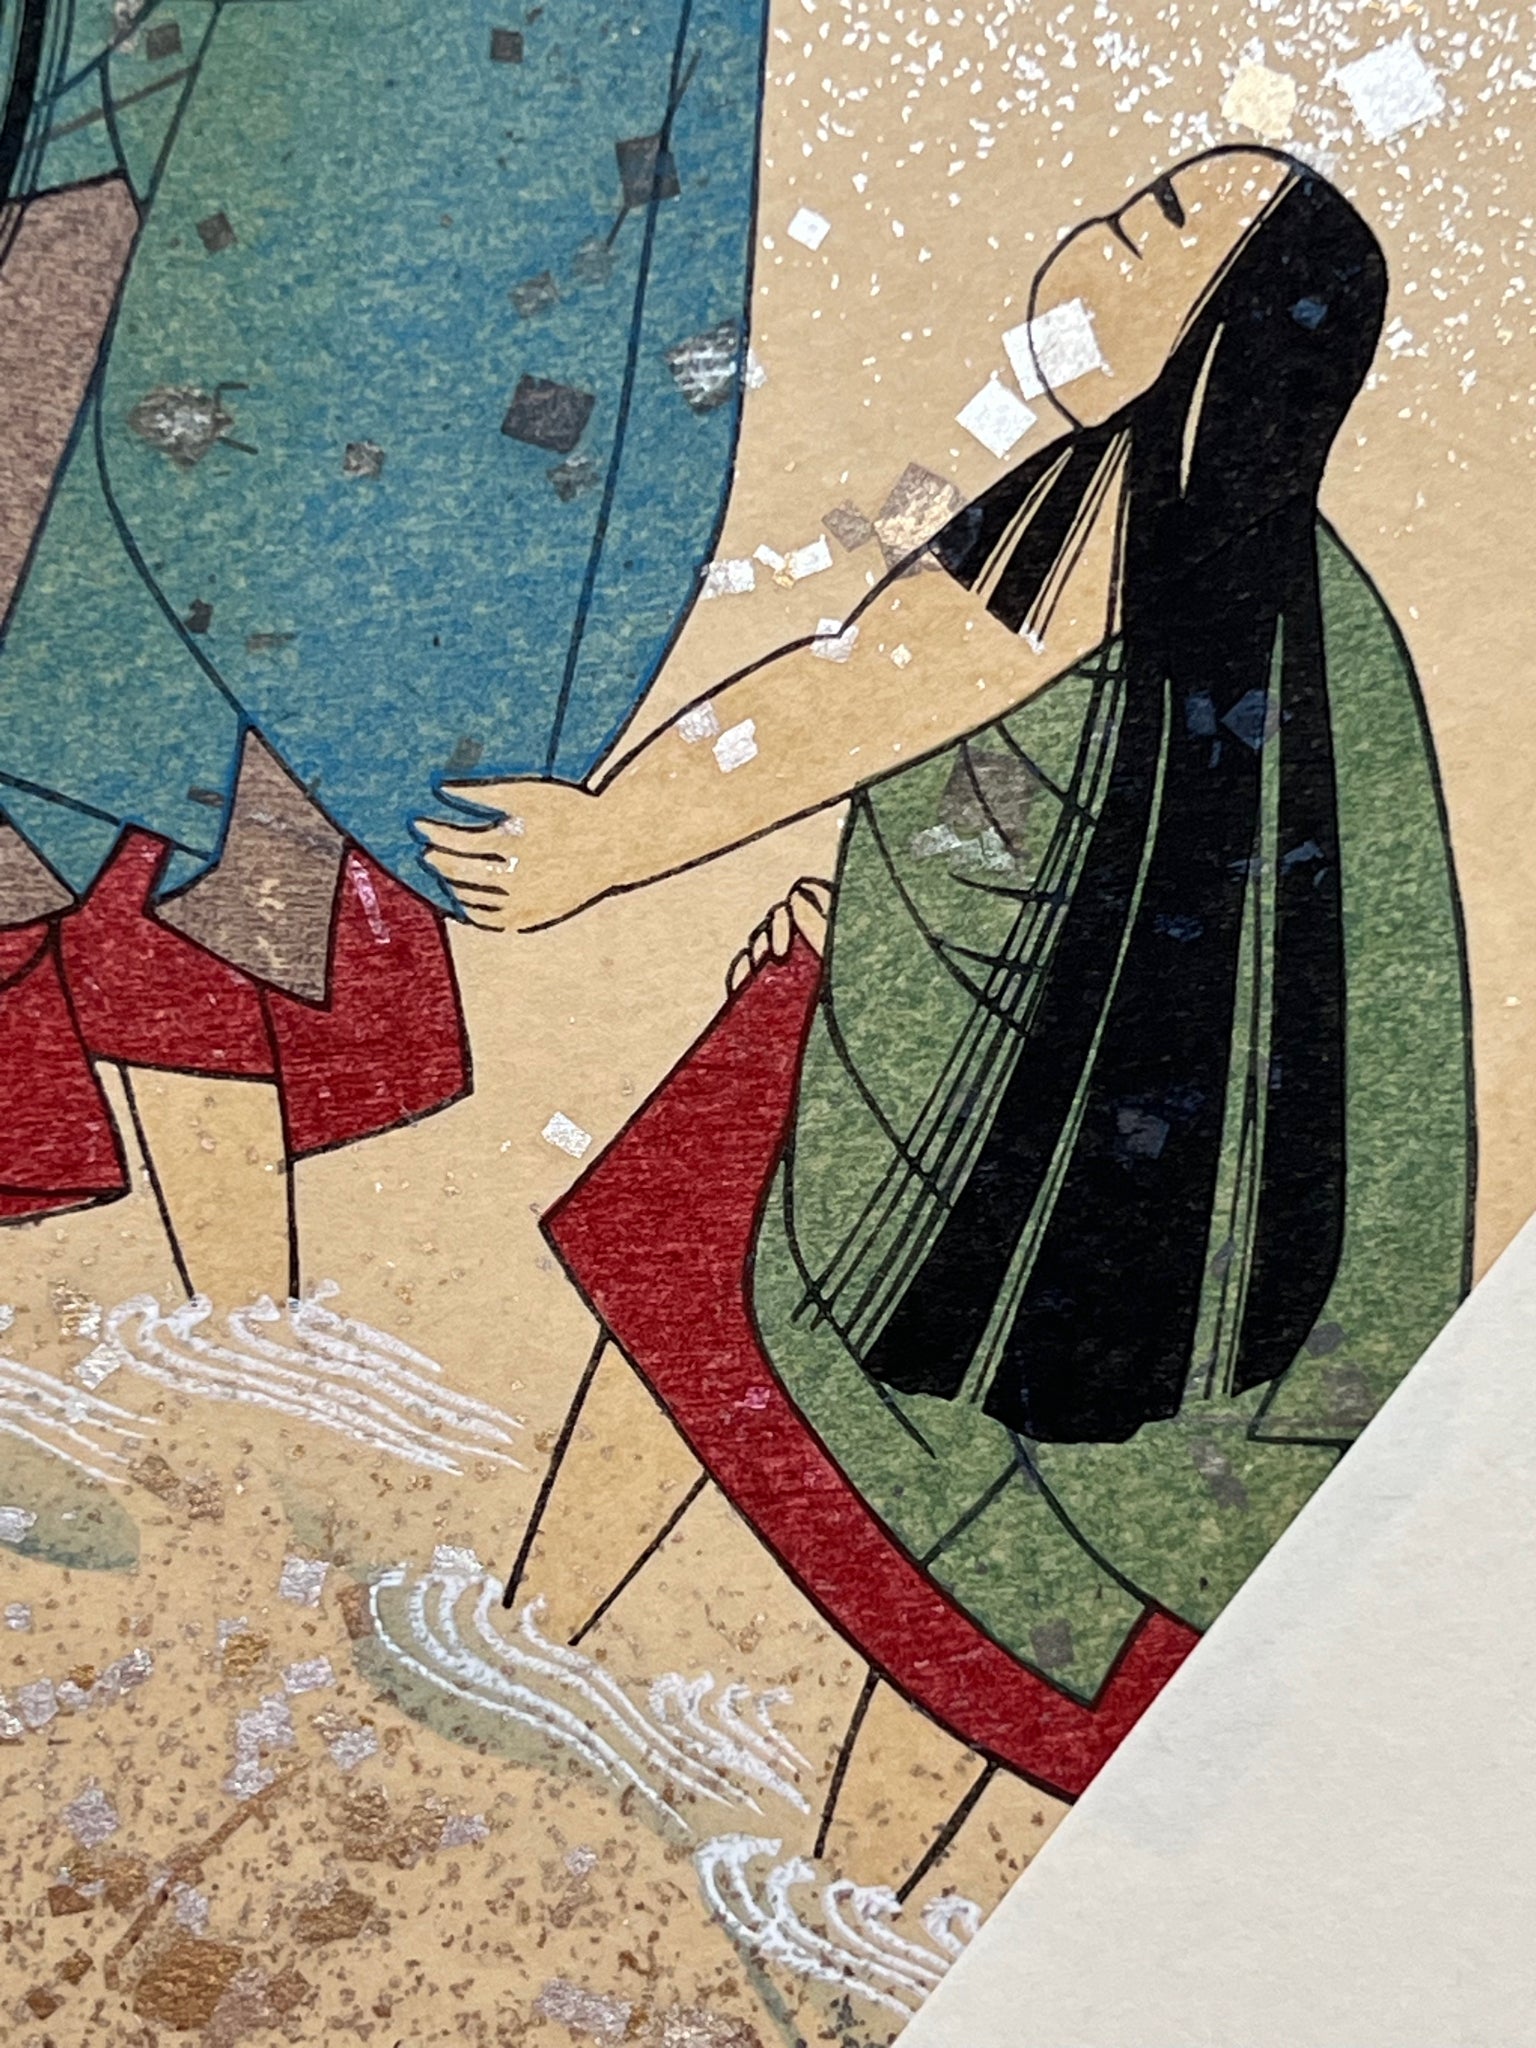 Estampe japonaise en forme d'éventail parsemée de fragments d'or et d'argent, gros plan sur l'une des femmes se baignant dans une rivière, tenant la manche de l'autre.